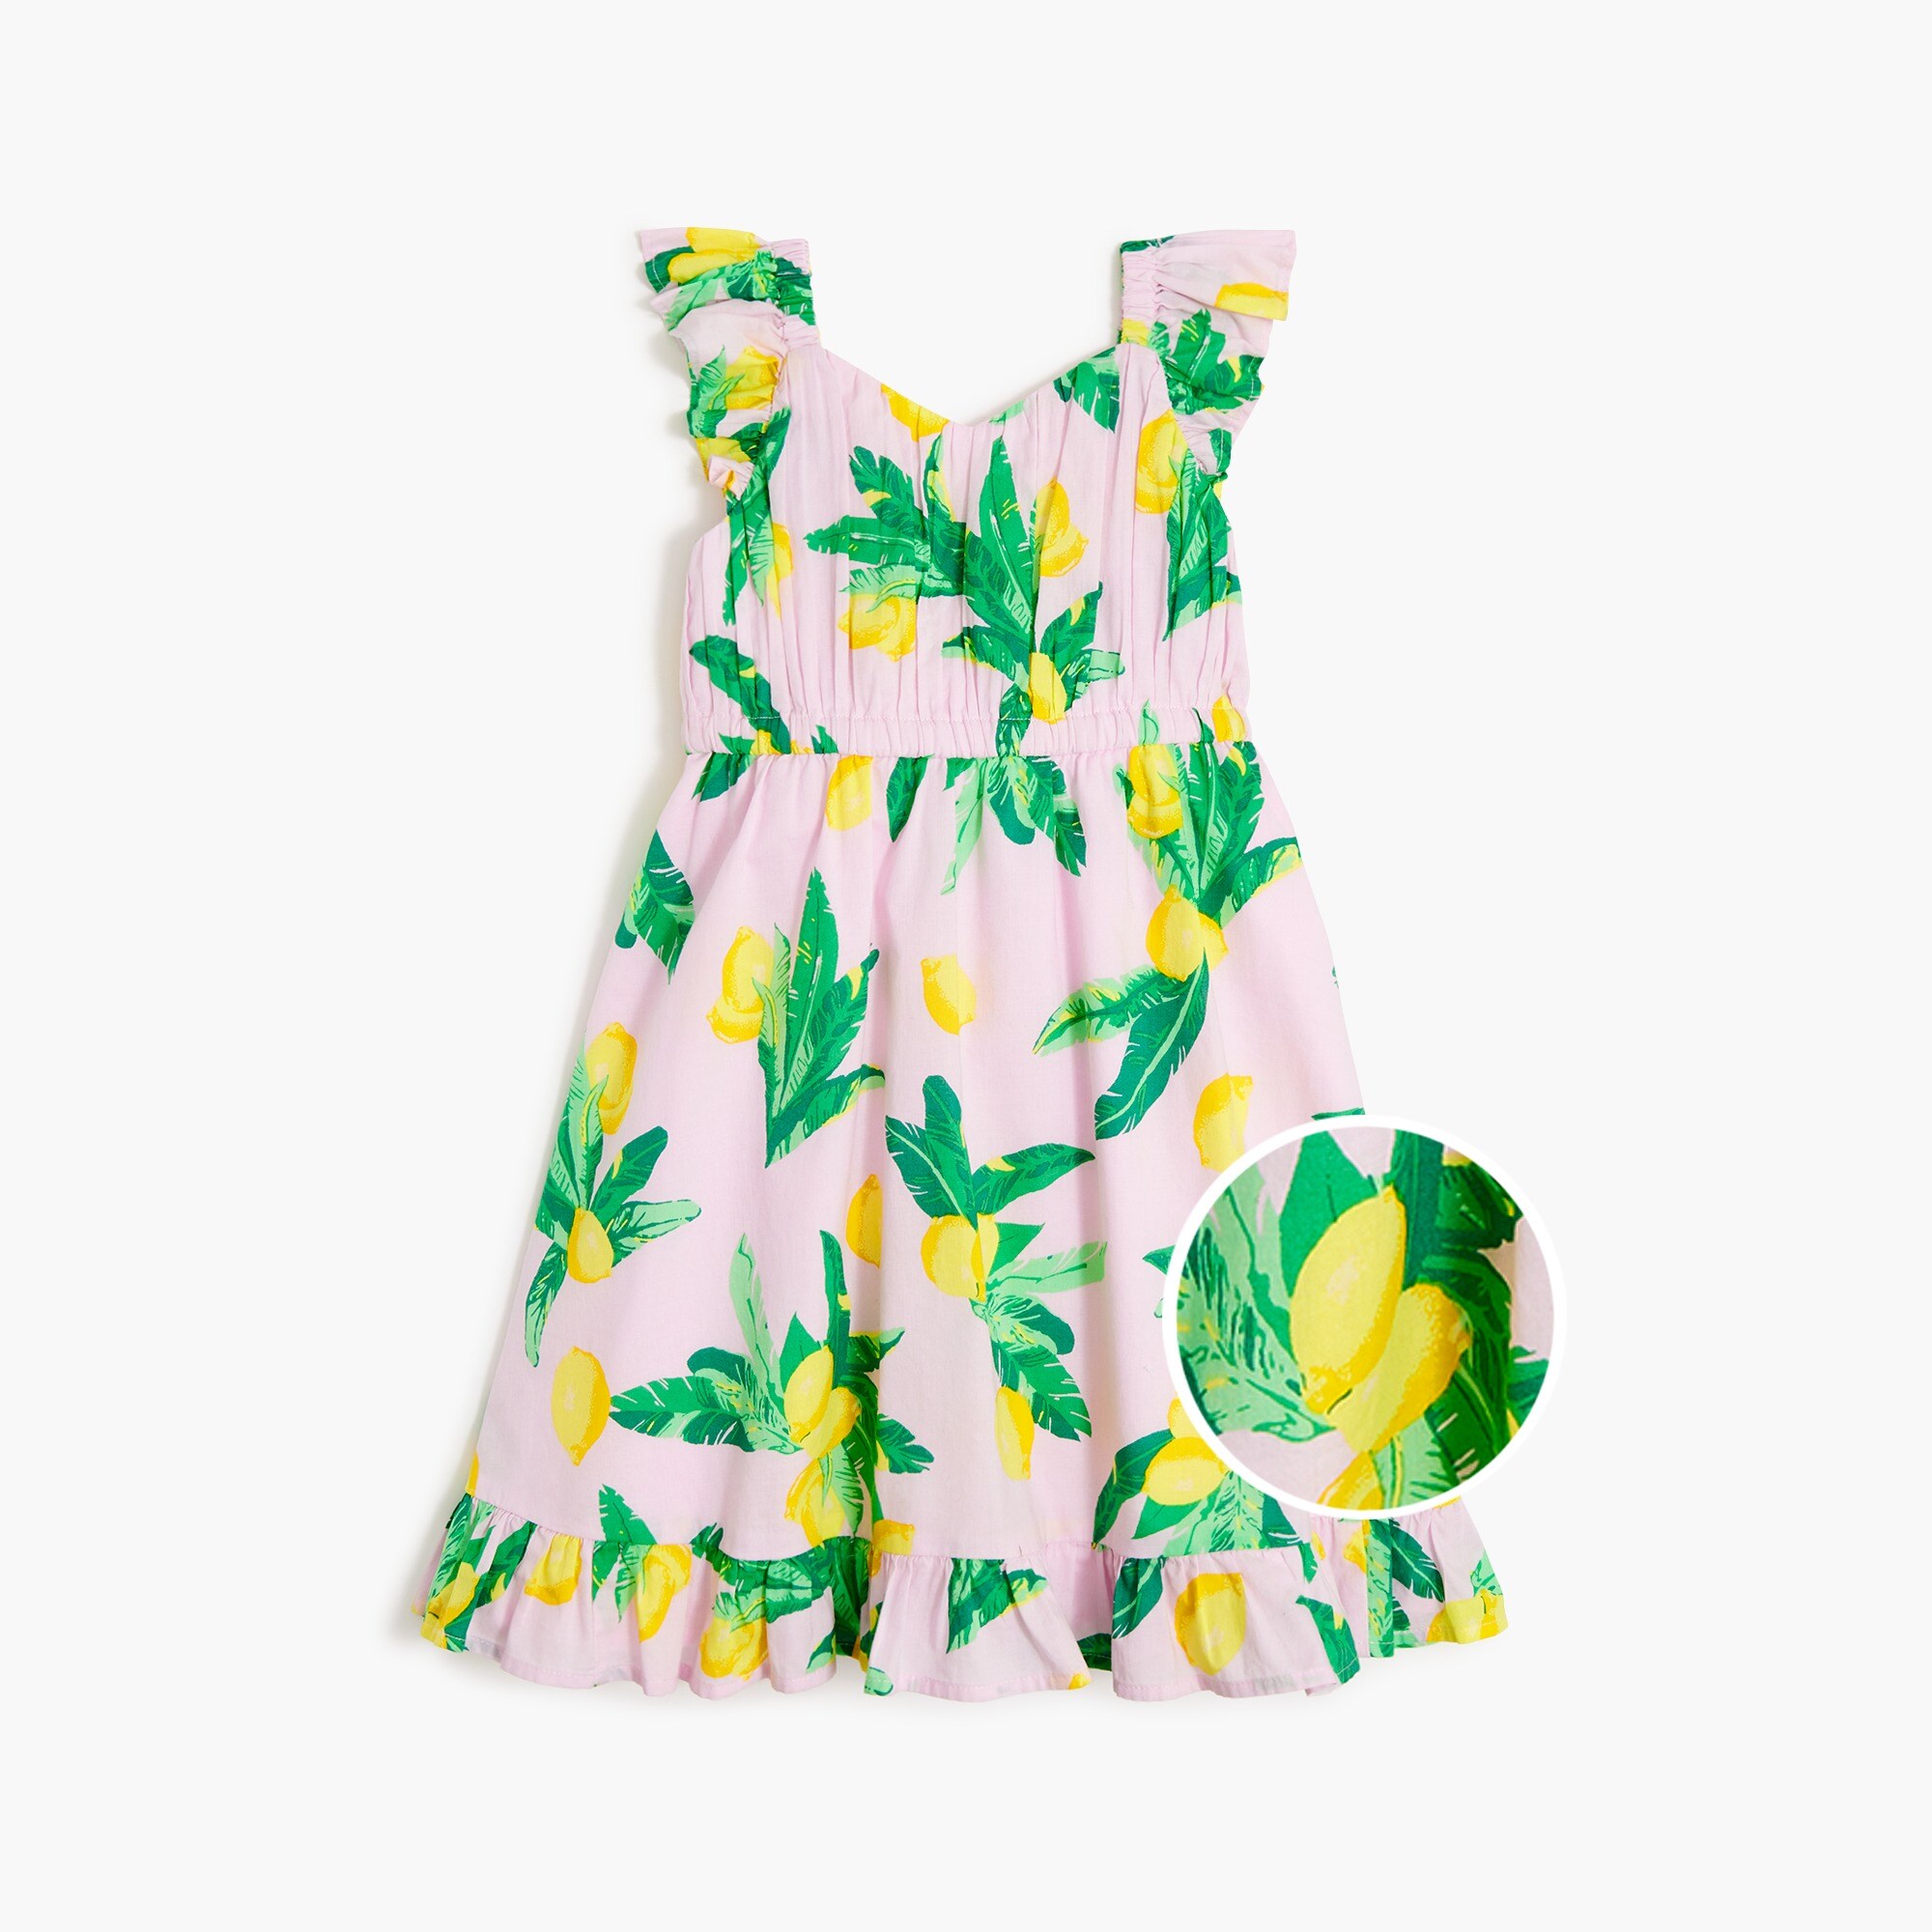  Girls' lemon dress